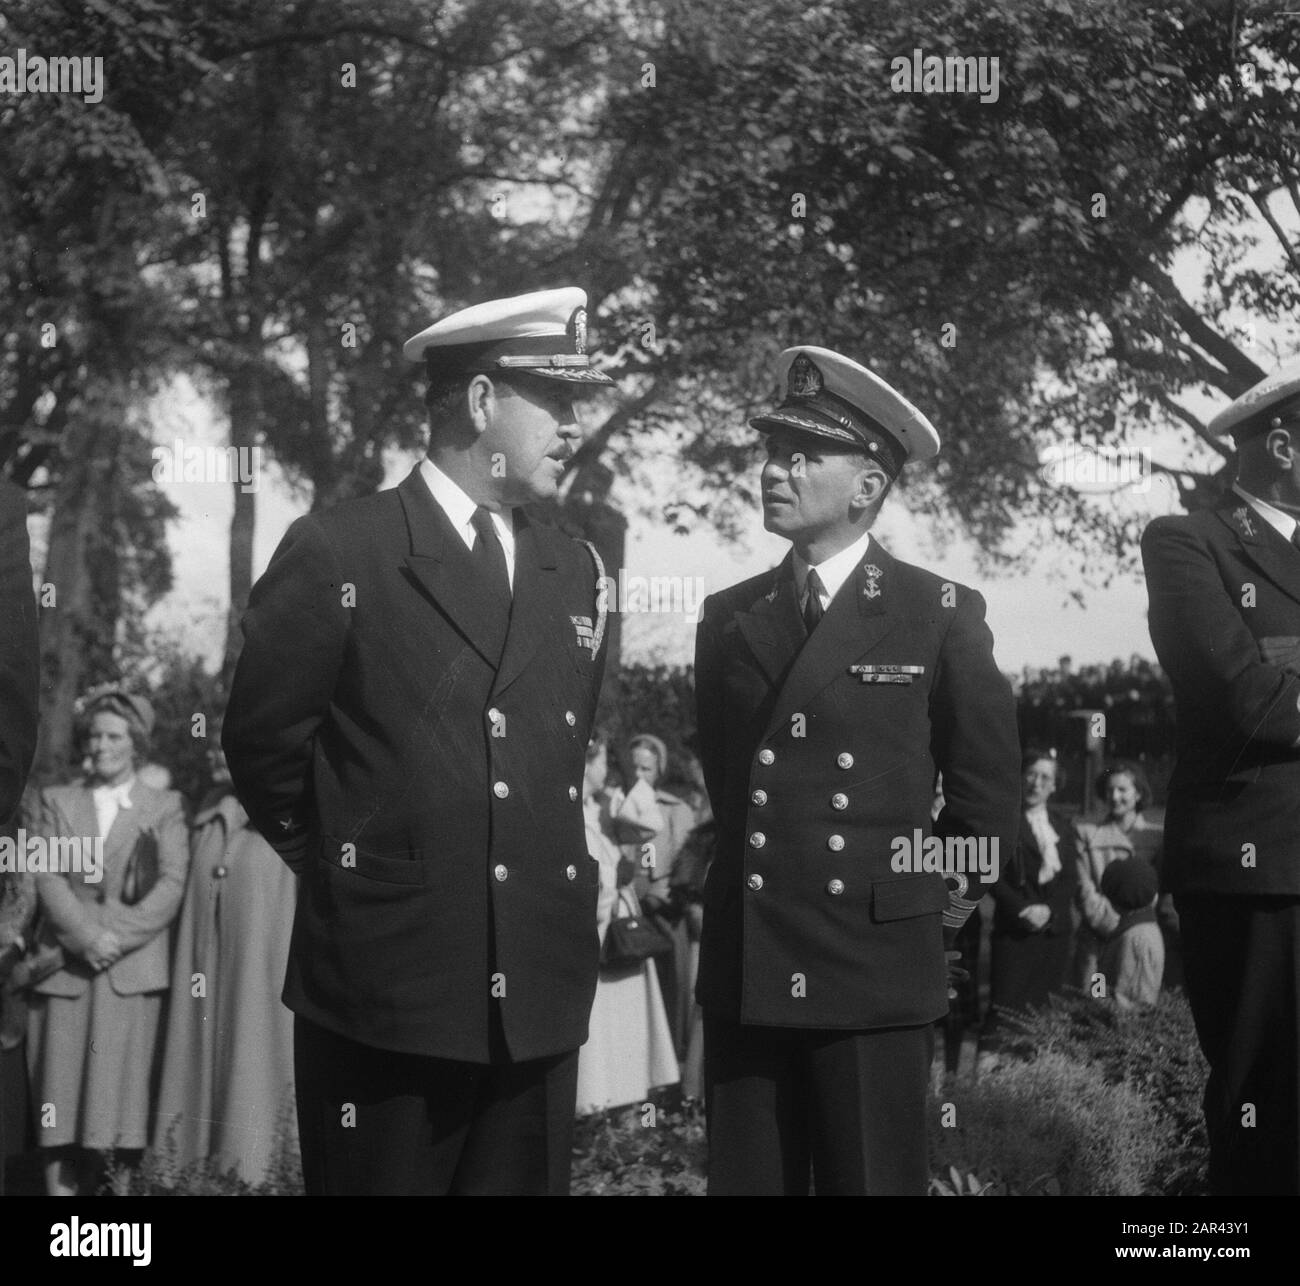 Installazione midshipmen Royal Marine Institute Data: 12 settembre 1950 luogo: Den Helder Parole Chiave: Midshipmen, installazioni, marine Foto Stock